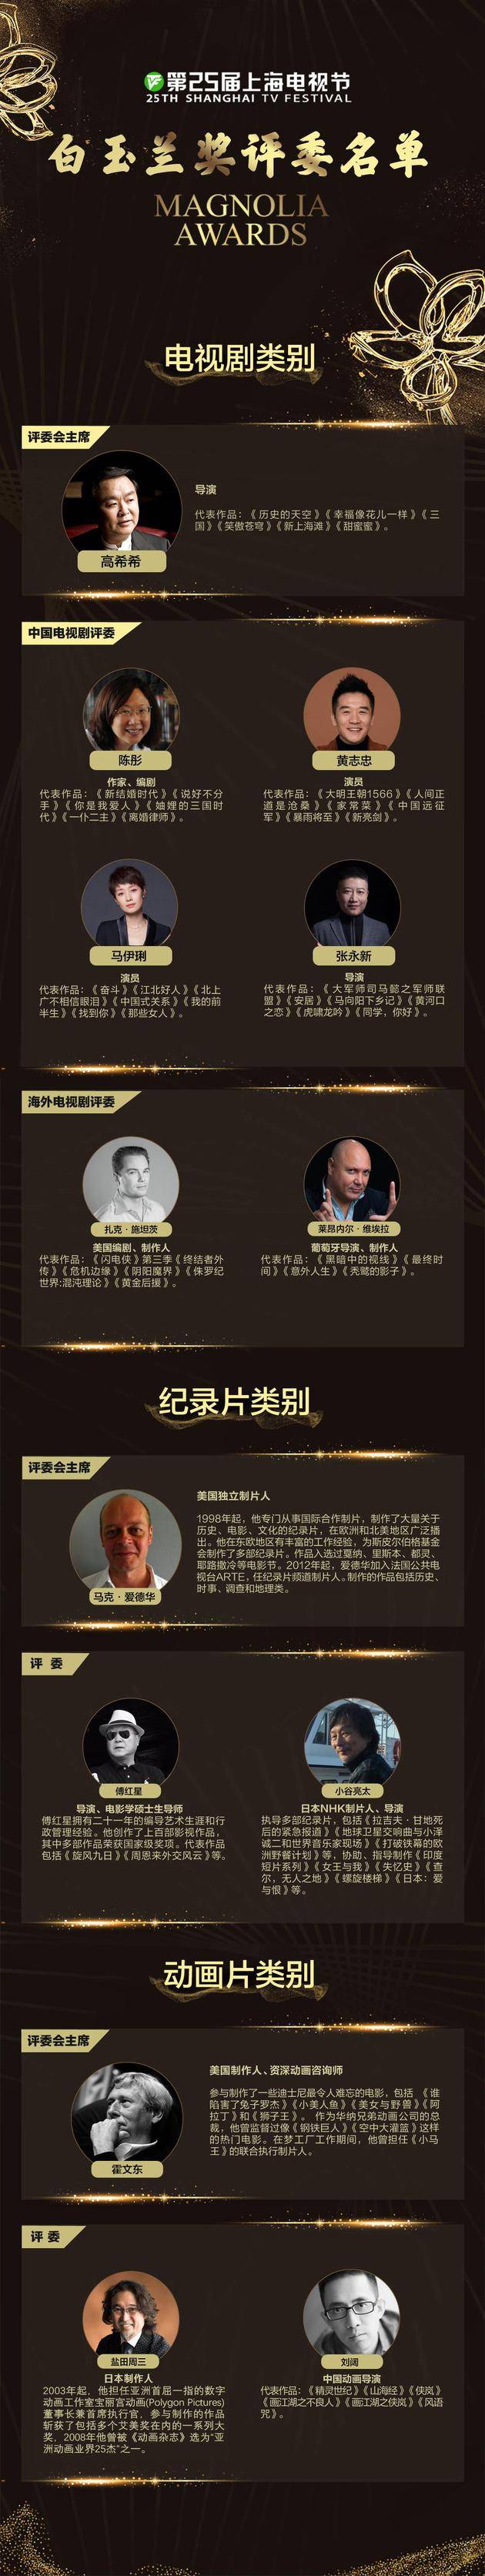 第25届上海电视节白玉兰奖评委名单公布